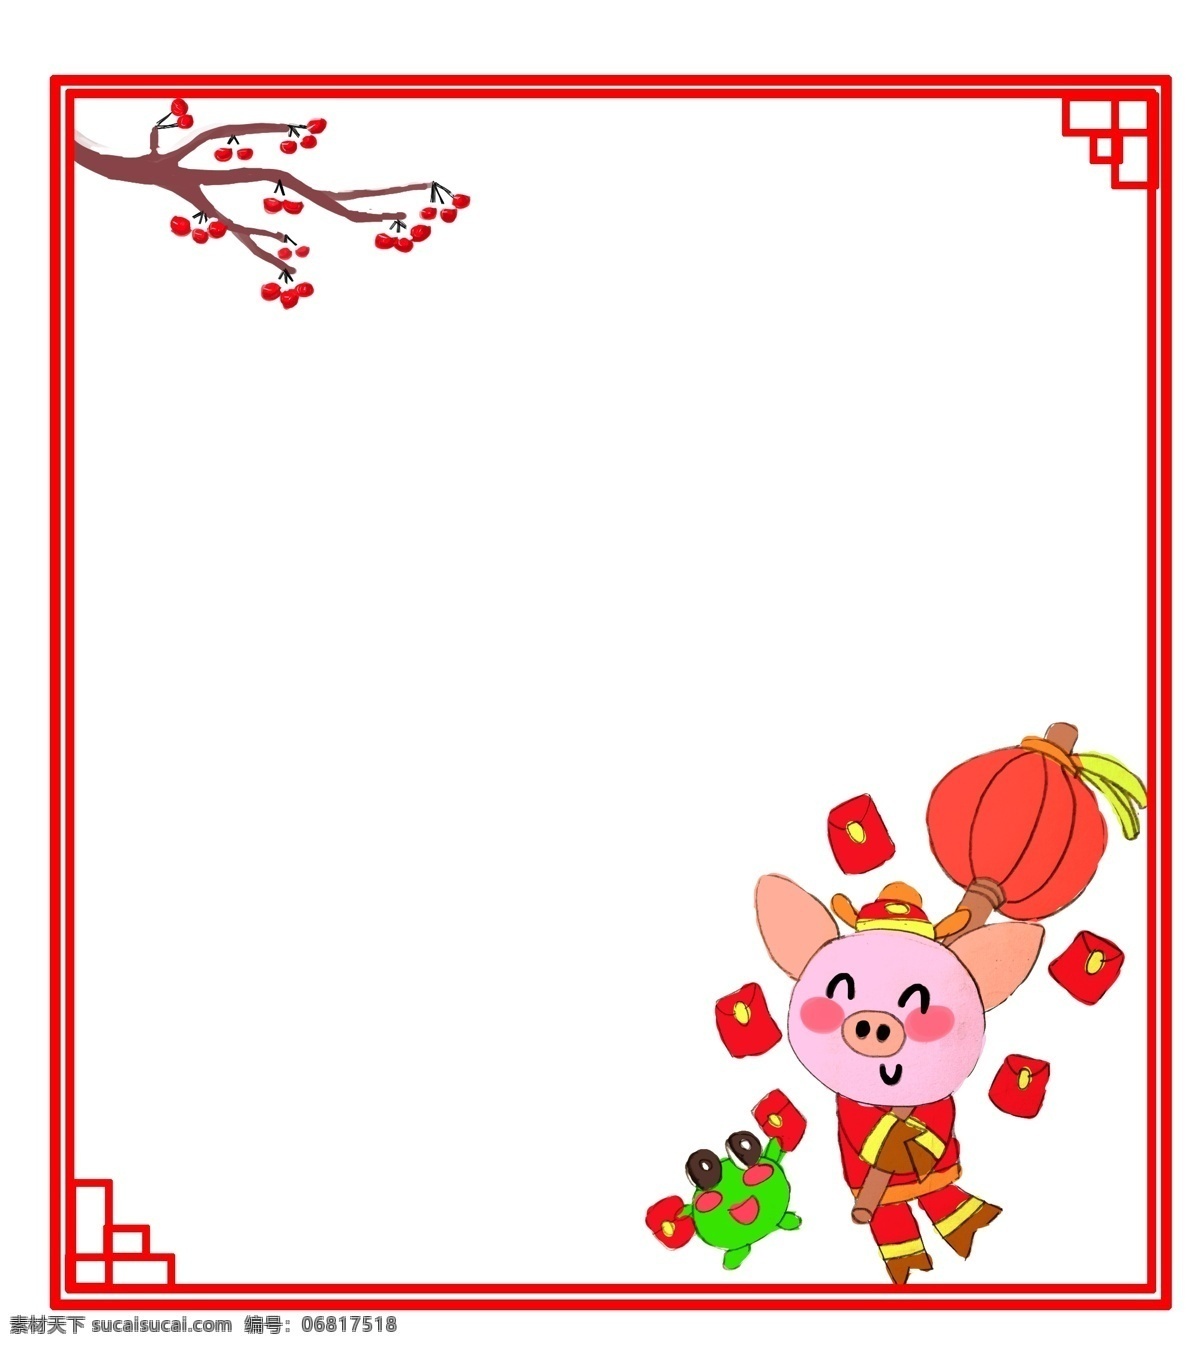 边框 新年 卡通 粉色 猪 收到 红包 红包边框 卡通手绘 粉色小猪 绿色青蛙 红色灯笼 红包拿来 喜气洋洋 欢度新年